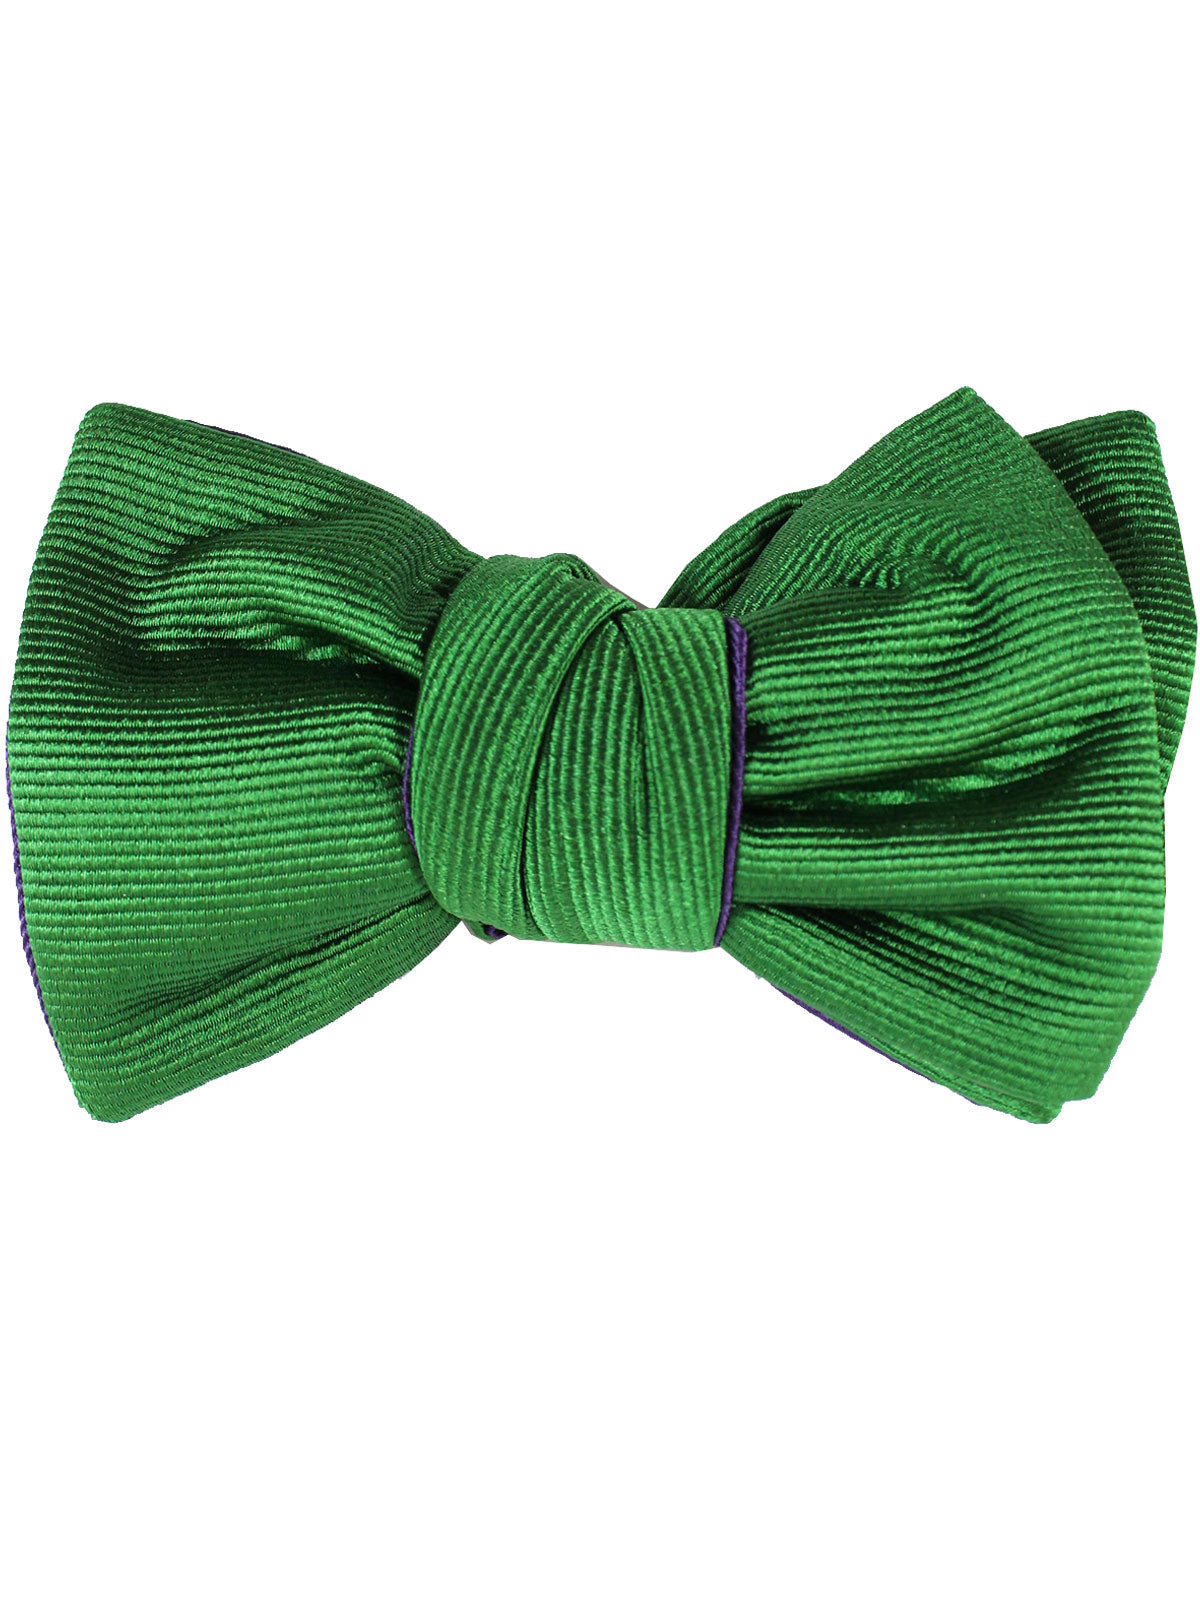 Le Noeud Papillon Silk Bow Tie Green Purple Grosgrain - Self Tie